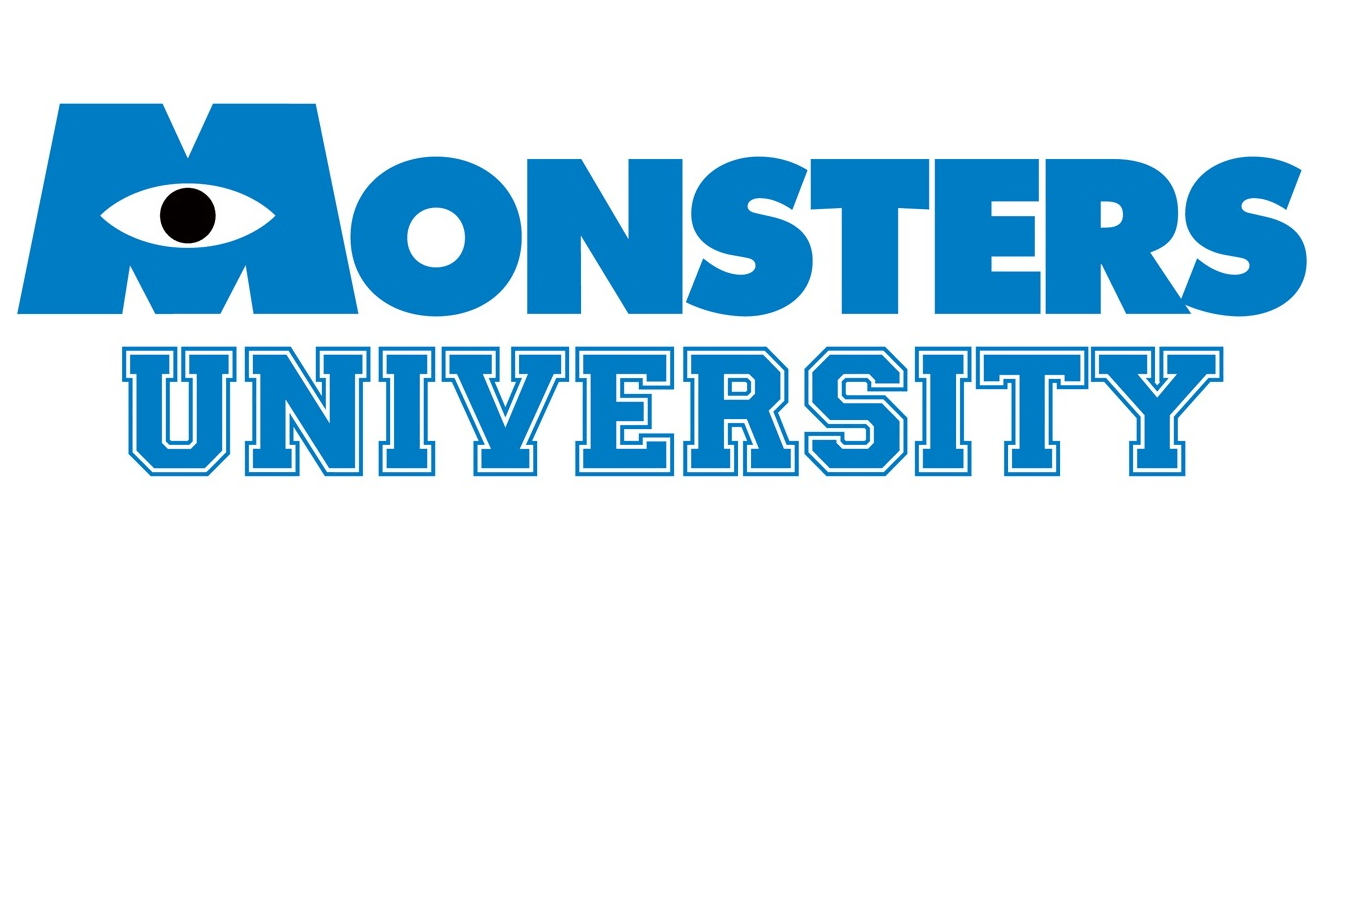 Monsters U Logo - MonstersU. Our Schools. Monster university, Monsters inc., disney